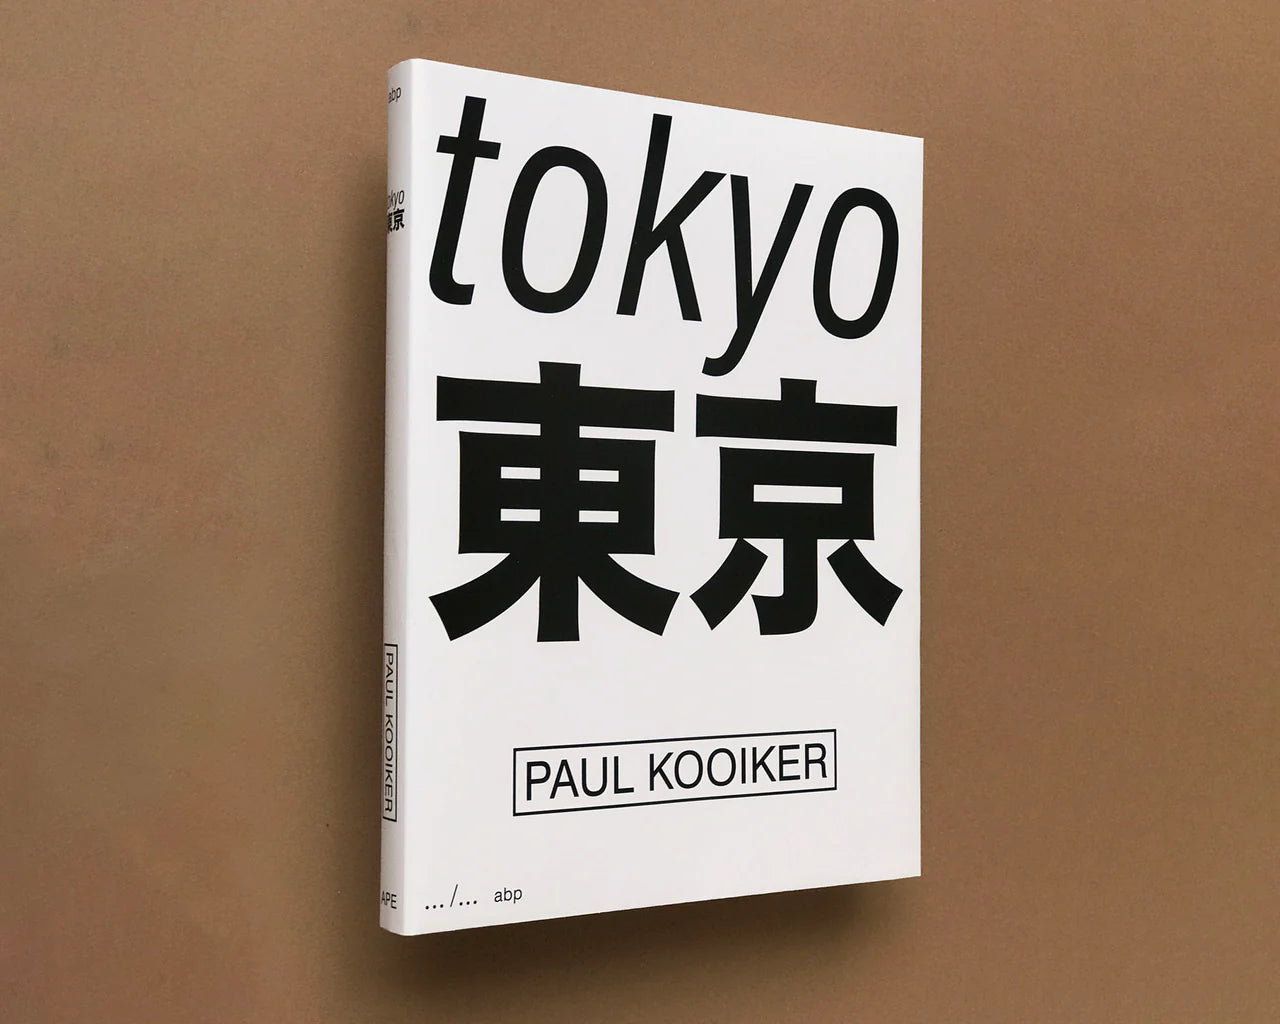 Tokyo by Paul Kooiker